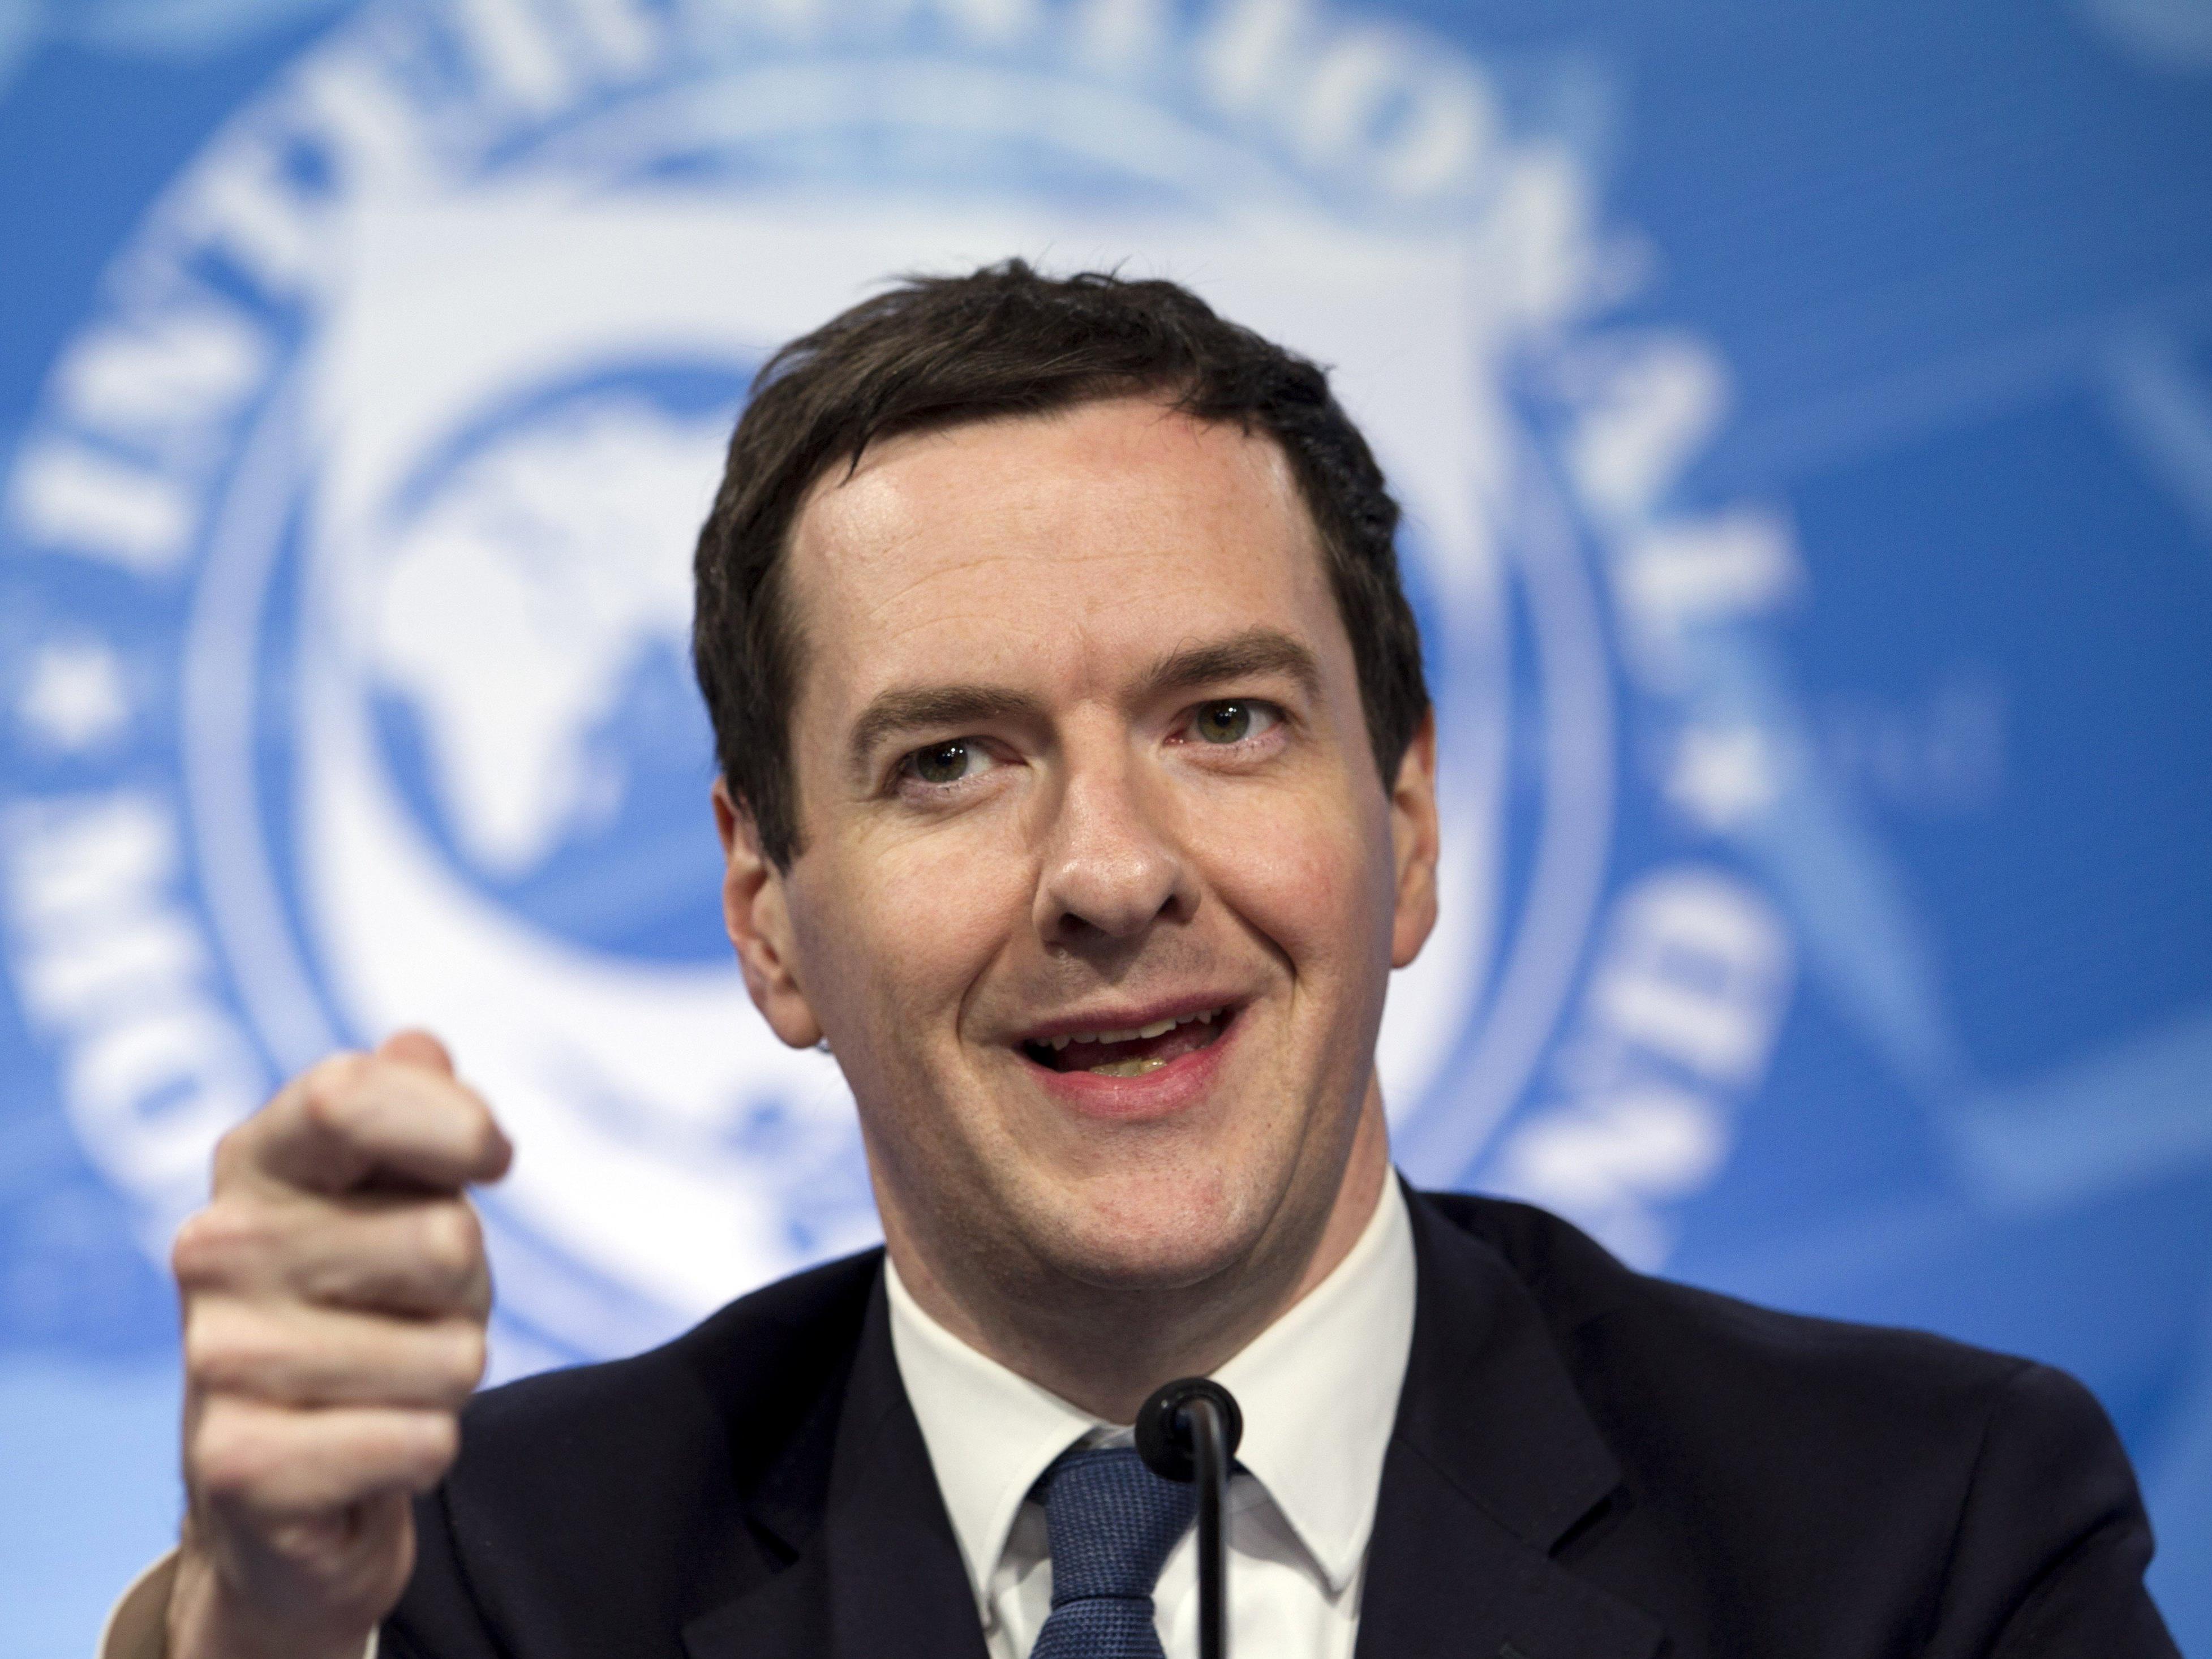 Der britische Finanzminister George Osborne warnt seine Landsleute vor einem Austritt aus der EU. Jahre der Rezession stünden bevor.